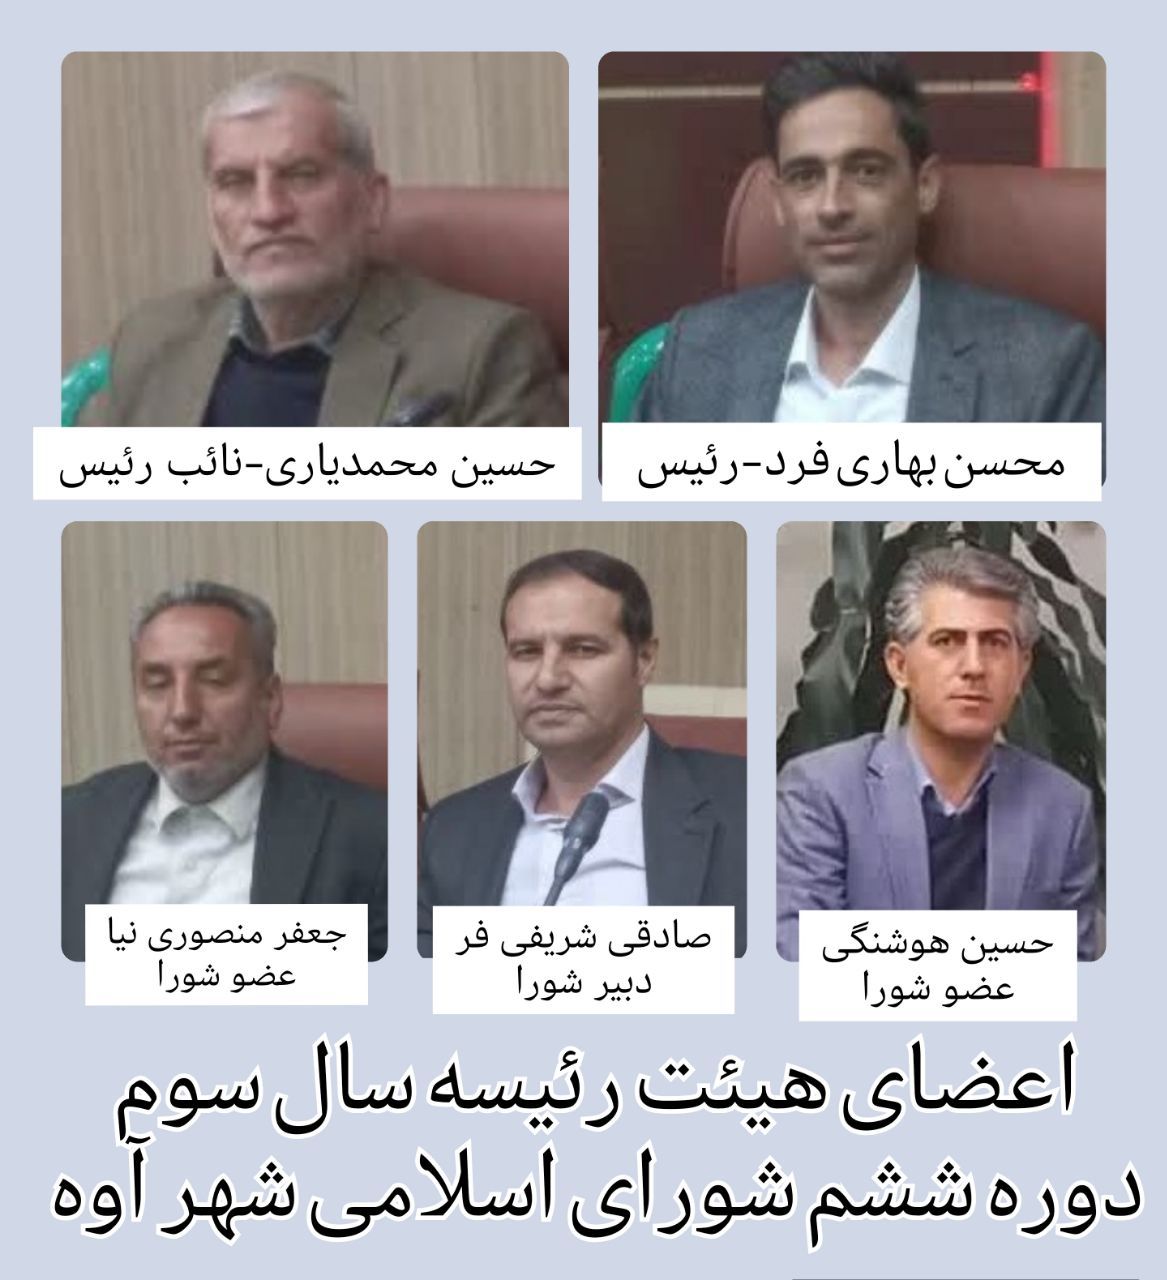 اعضای هیئت رئیسه شورای اسلامی شهر آوه انتخاب شدند/پیام تبریک مهندس محمدی شهردار آوه